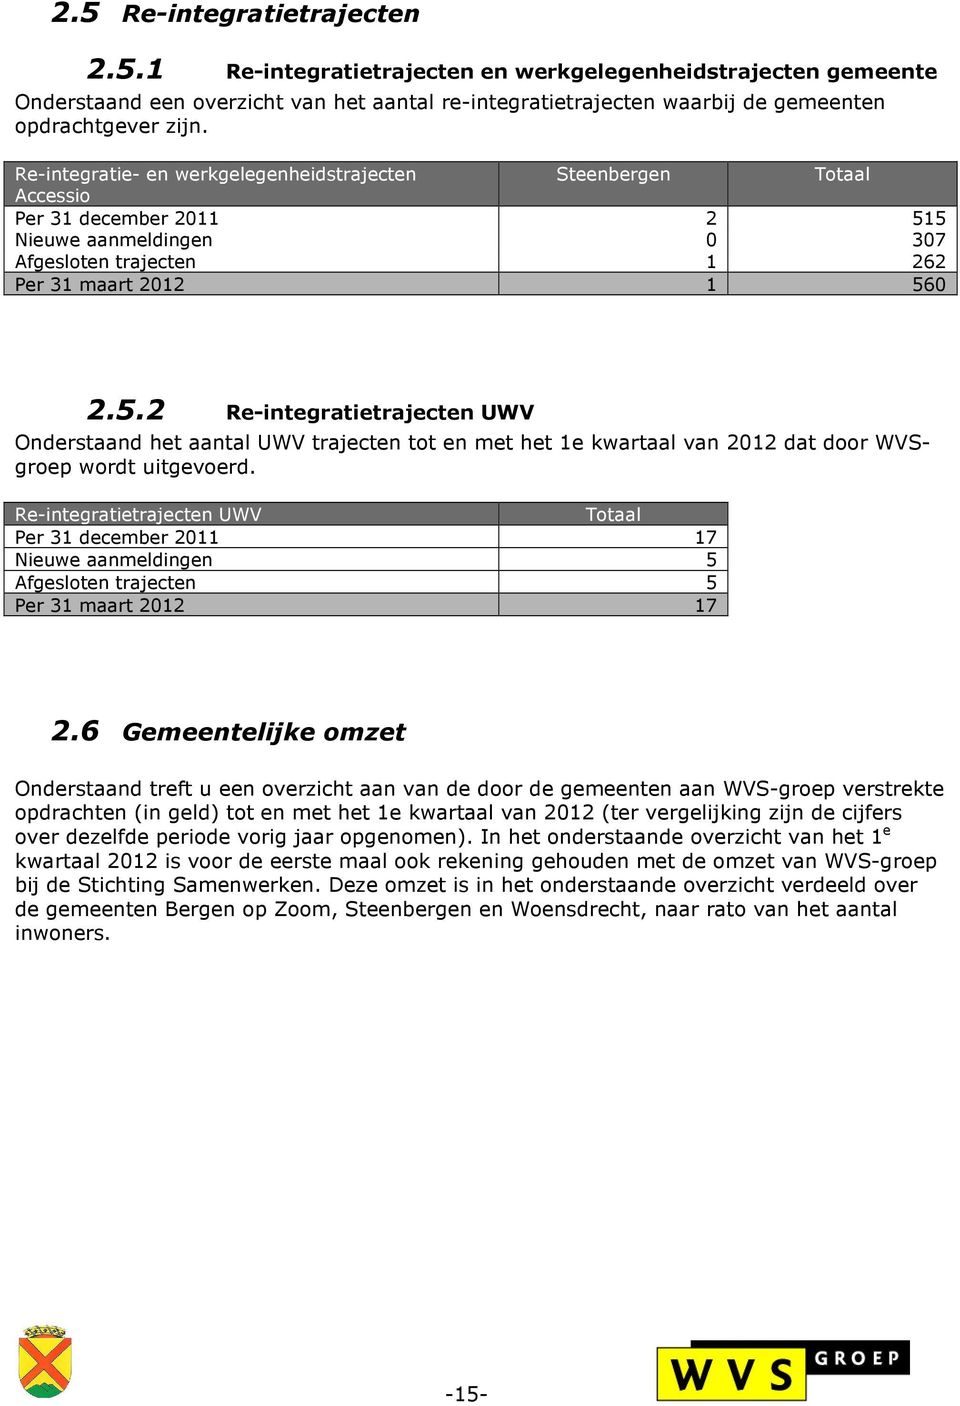 5 Nieuwe aanmeldingen 0 307 Afgesloten trajecten 1 262 Per 31 maart 2012 1 560 2.5.2 Re-integratietrajecten UWV Onderstaand het aantal UWV trajecten tot en met het 1e kwartaal van 2012 dat door WVSgroep wordt uitgevoerd.